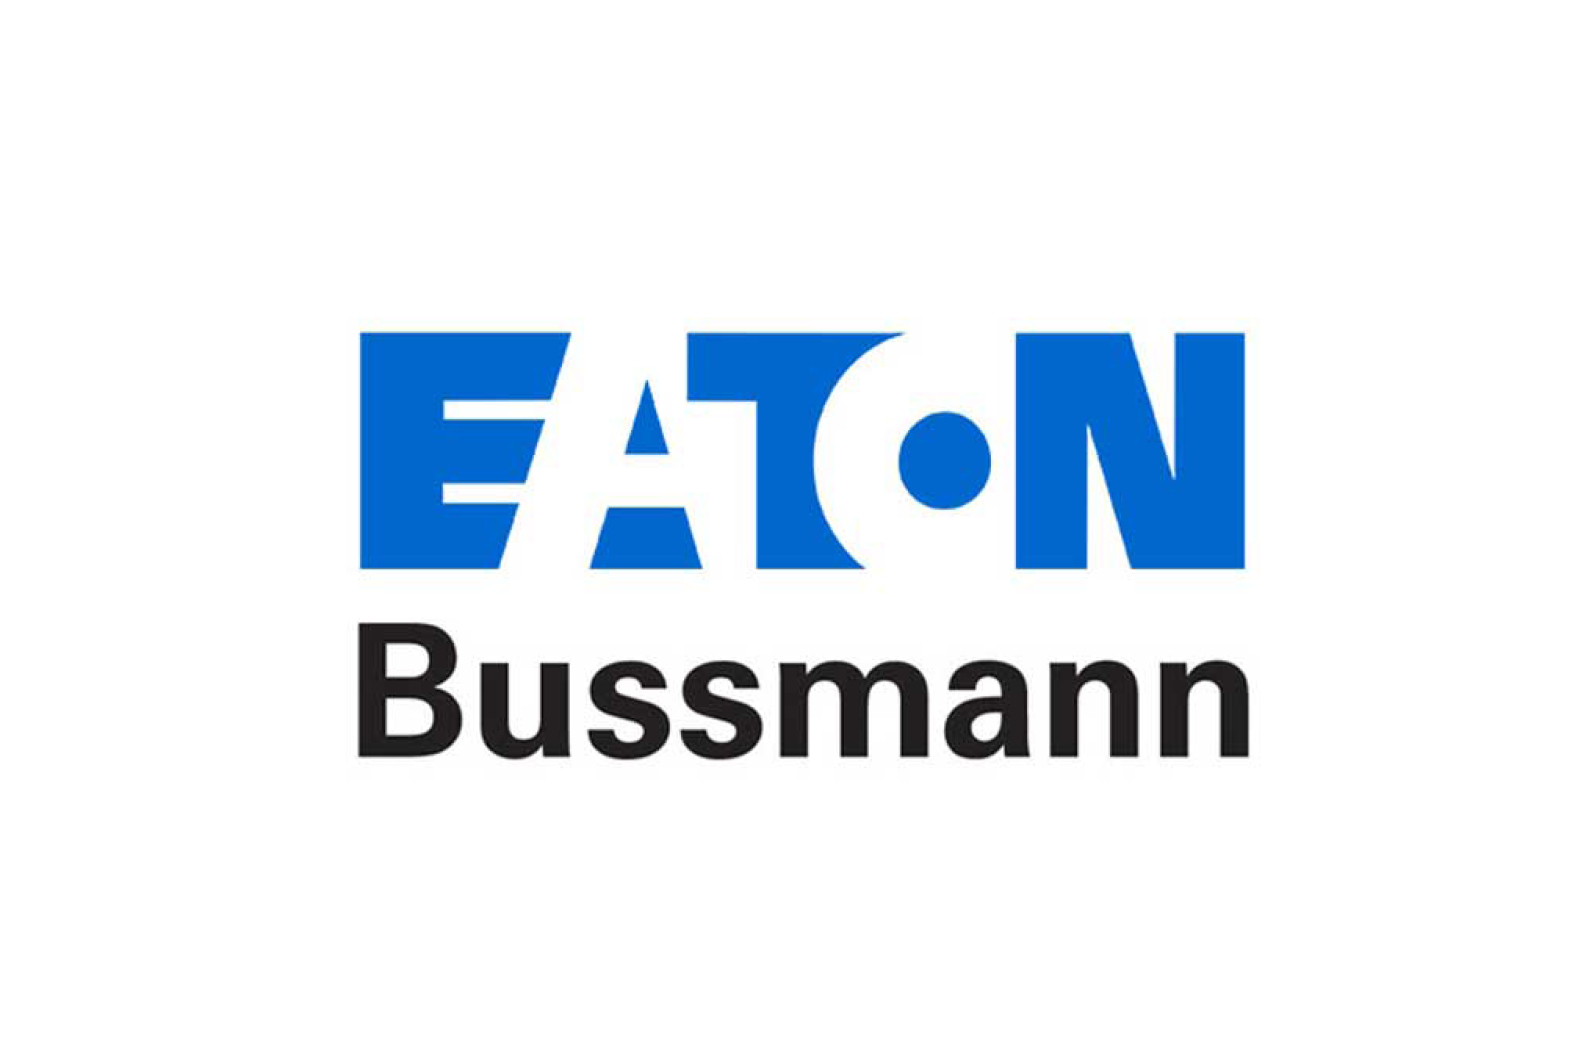 alt="Eaton Bussmann"